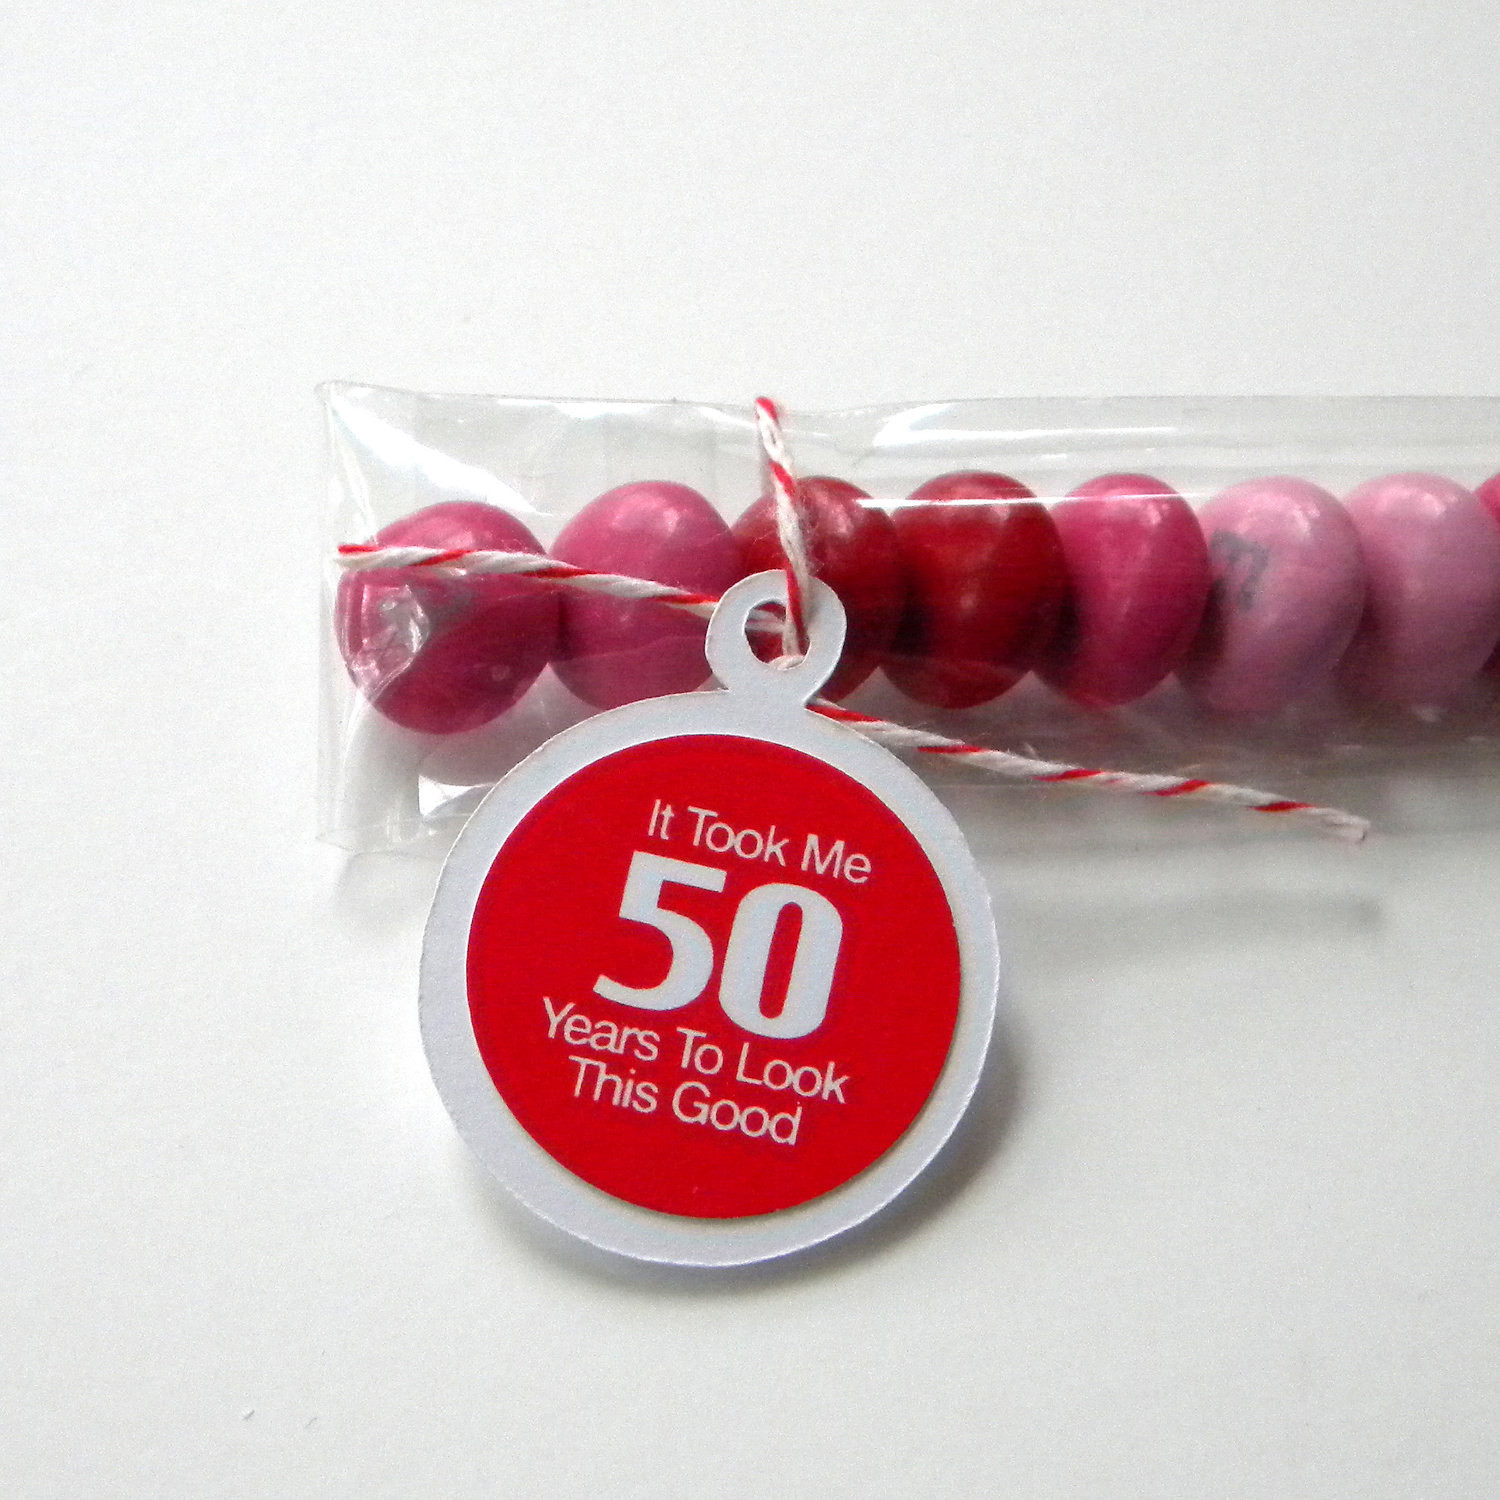 50 Birthday Party Favors
 50th Birthday Party Favors Candy Treat Bags It Took Me 50